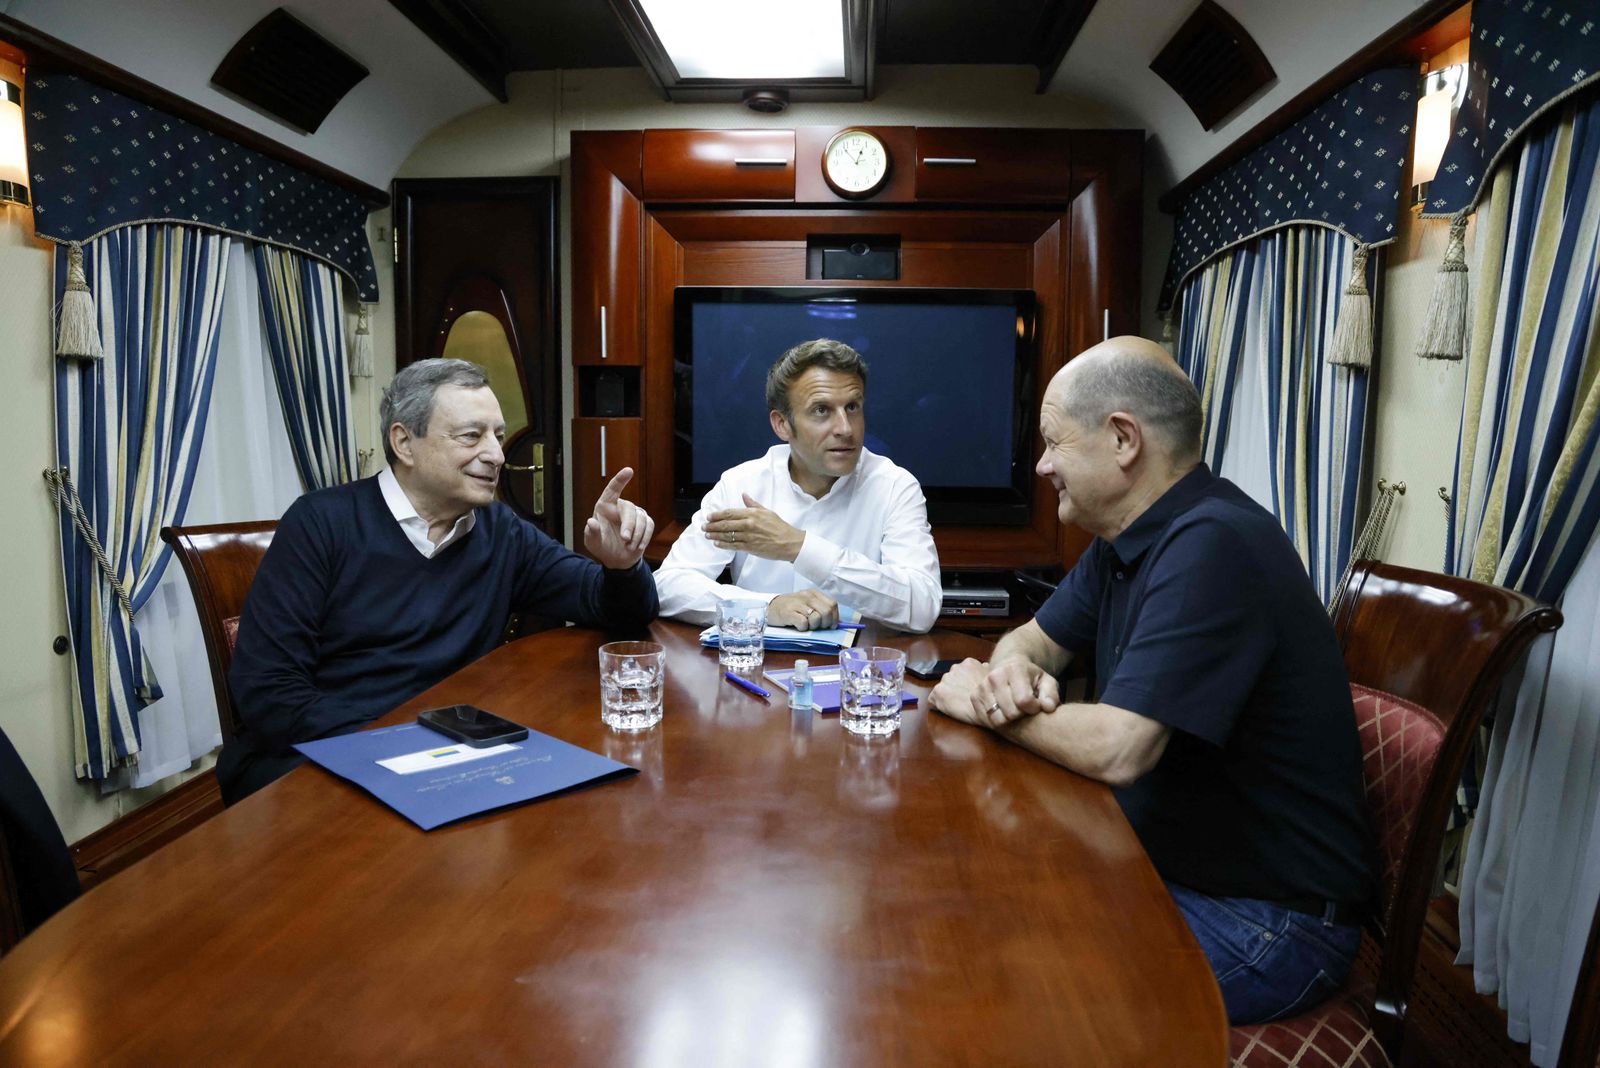 الرئيس الفرنسي إيمانويل ماكرون والمستشار الألماني أولاف شولتز ورئيس الوزراء الإيطالي ماريو دراجي يسافرون على متن قطار متجه إلى كييف. 16 يونيو 2022 - AFP